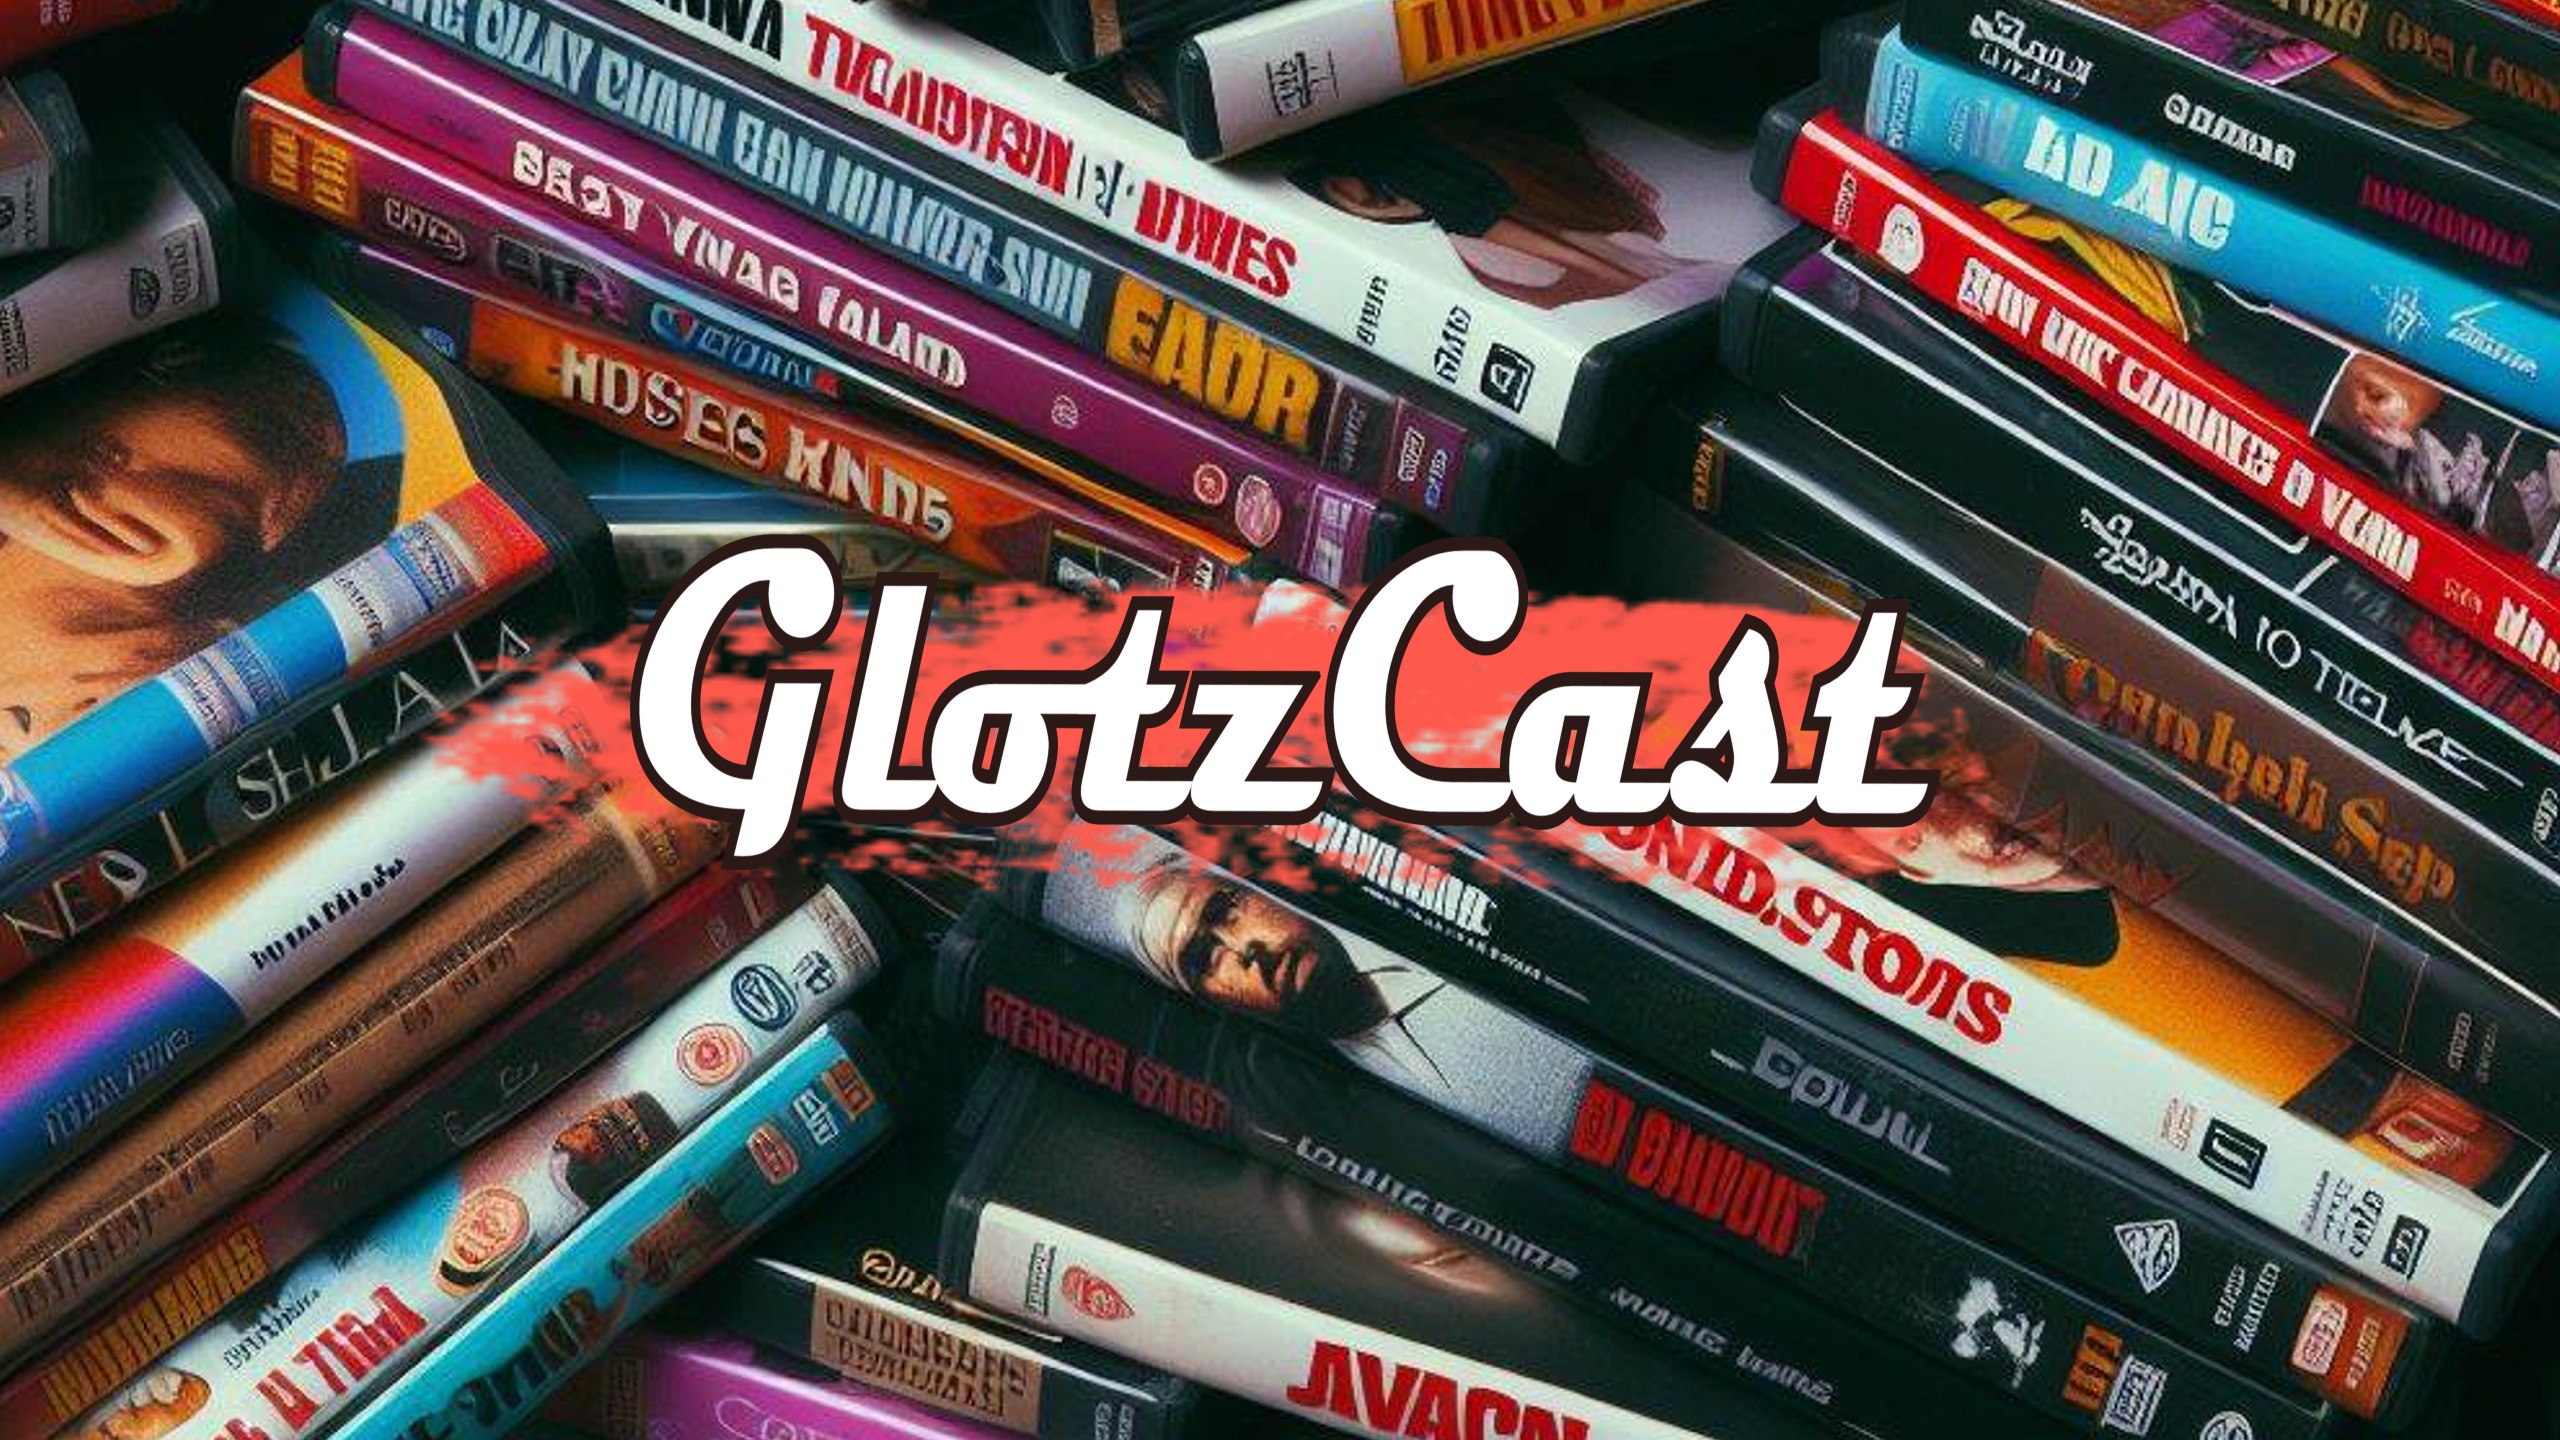 GlotzCast #148 – King of UTOPIA: Wie Owen Wilson das GIRL NEXT DOOR snatch’te